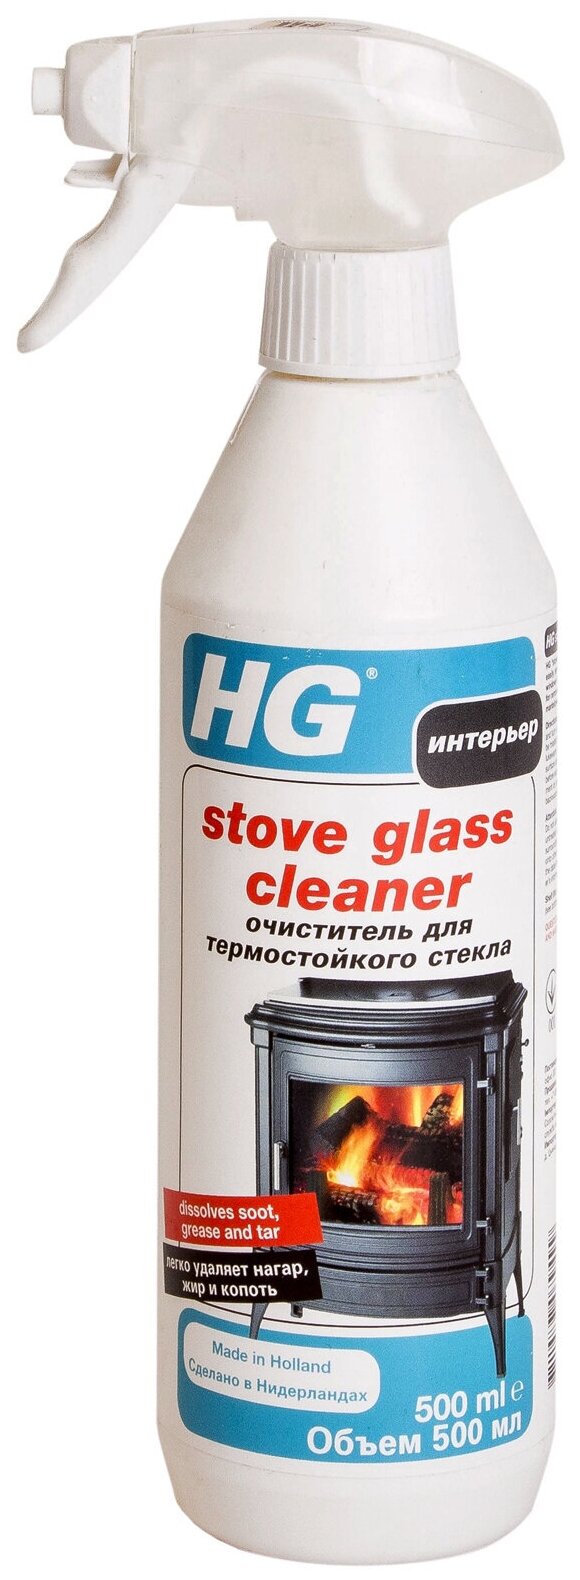 Очиститель HG Для термостойкого стекла 500 мл - фото №5